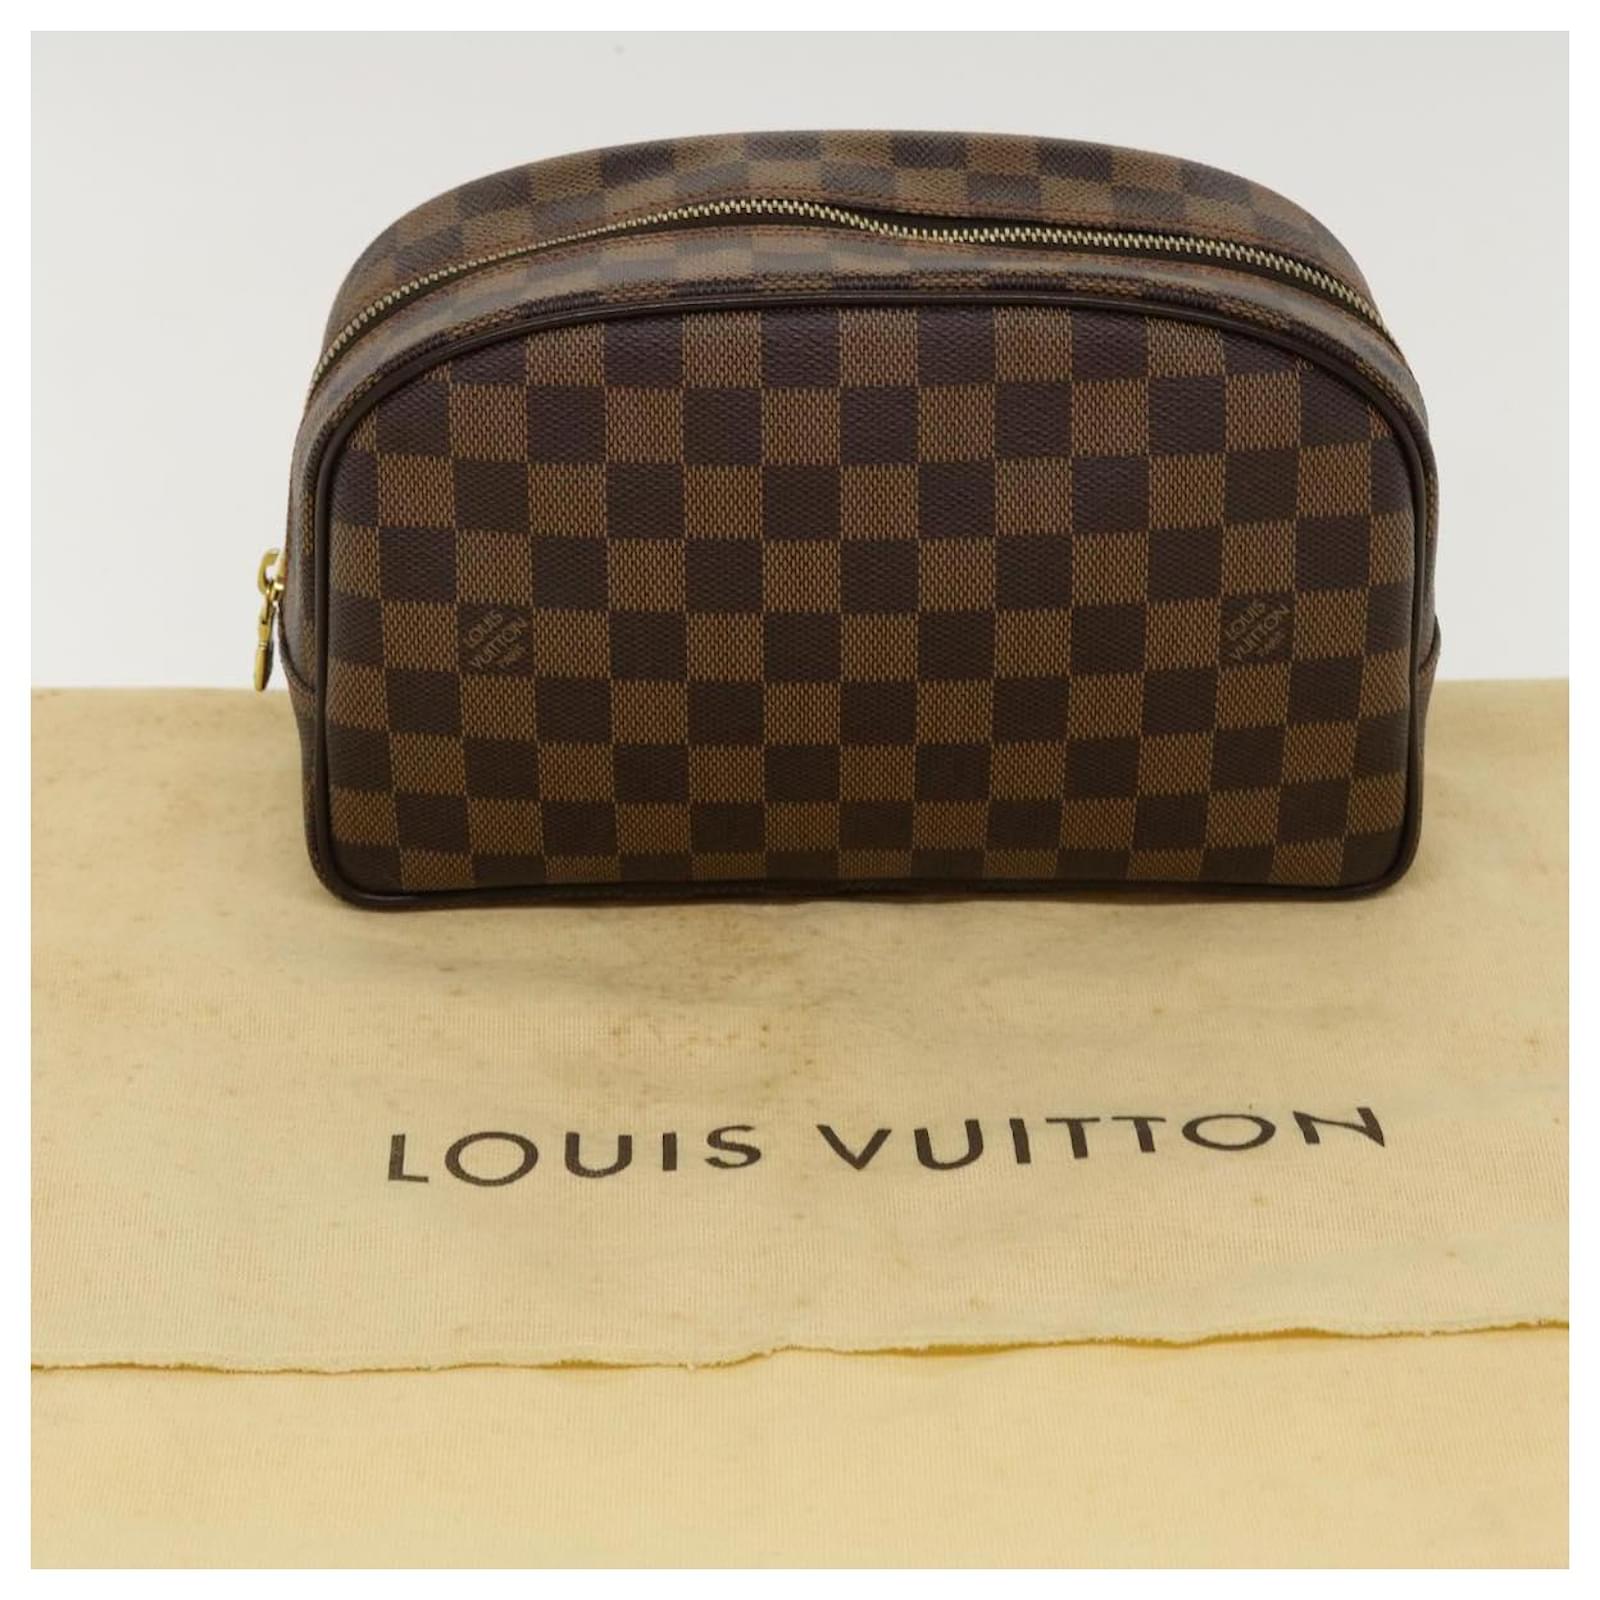 Louis-Vuitton-Damier-Trousse-Toilette-Pouch-Clutch-Bag-N47623